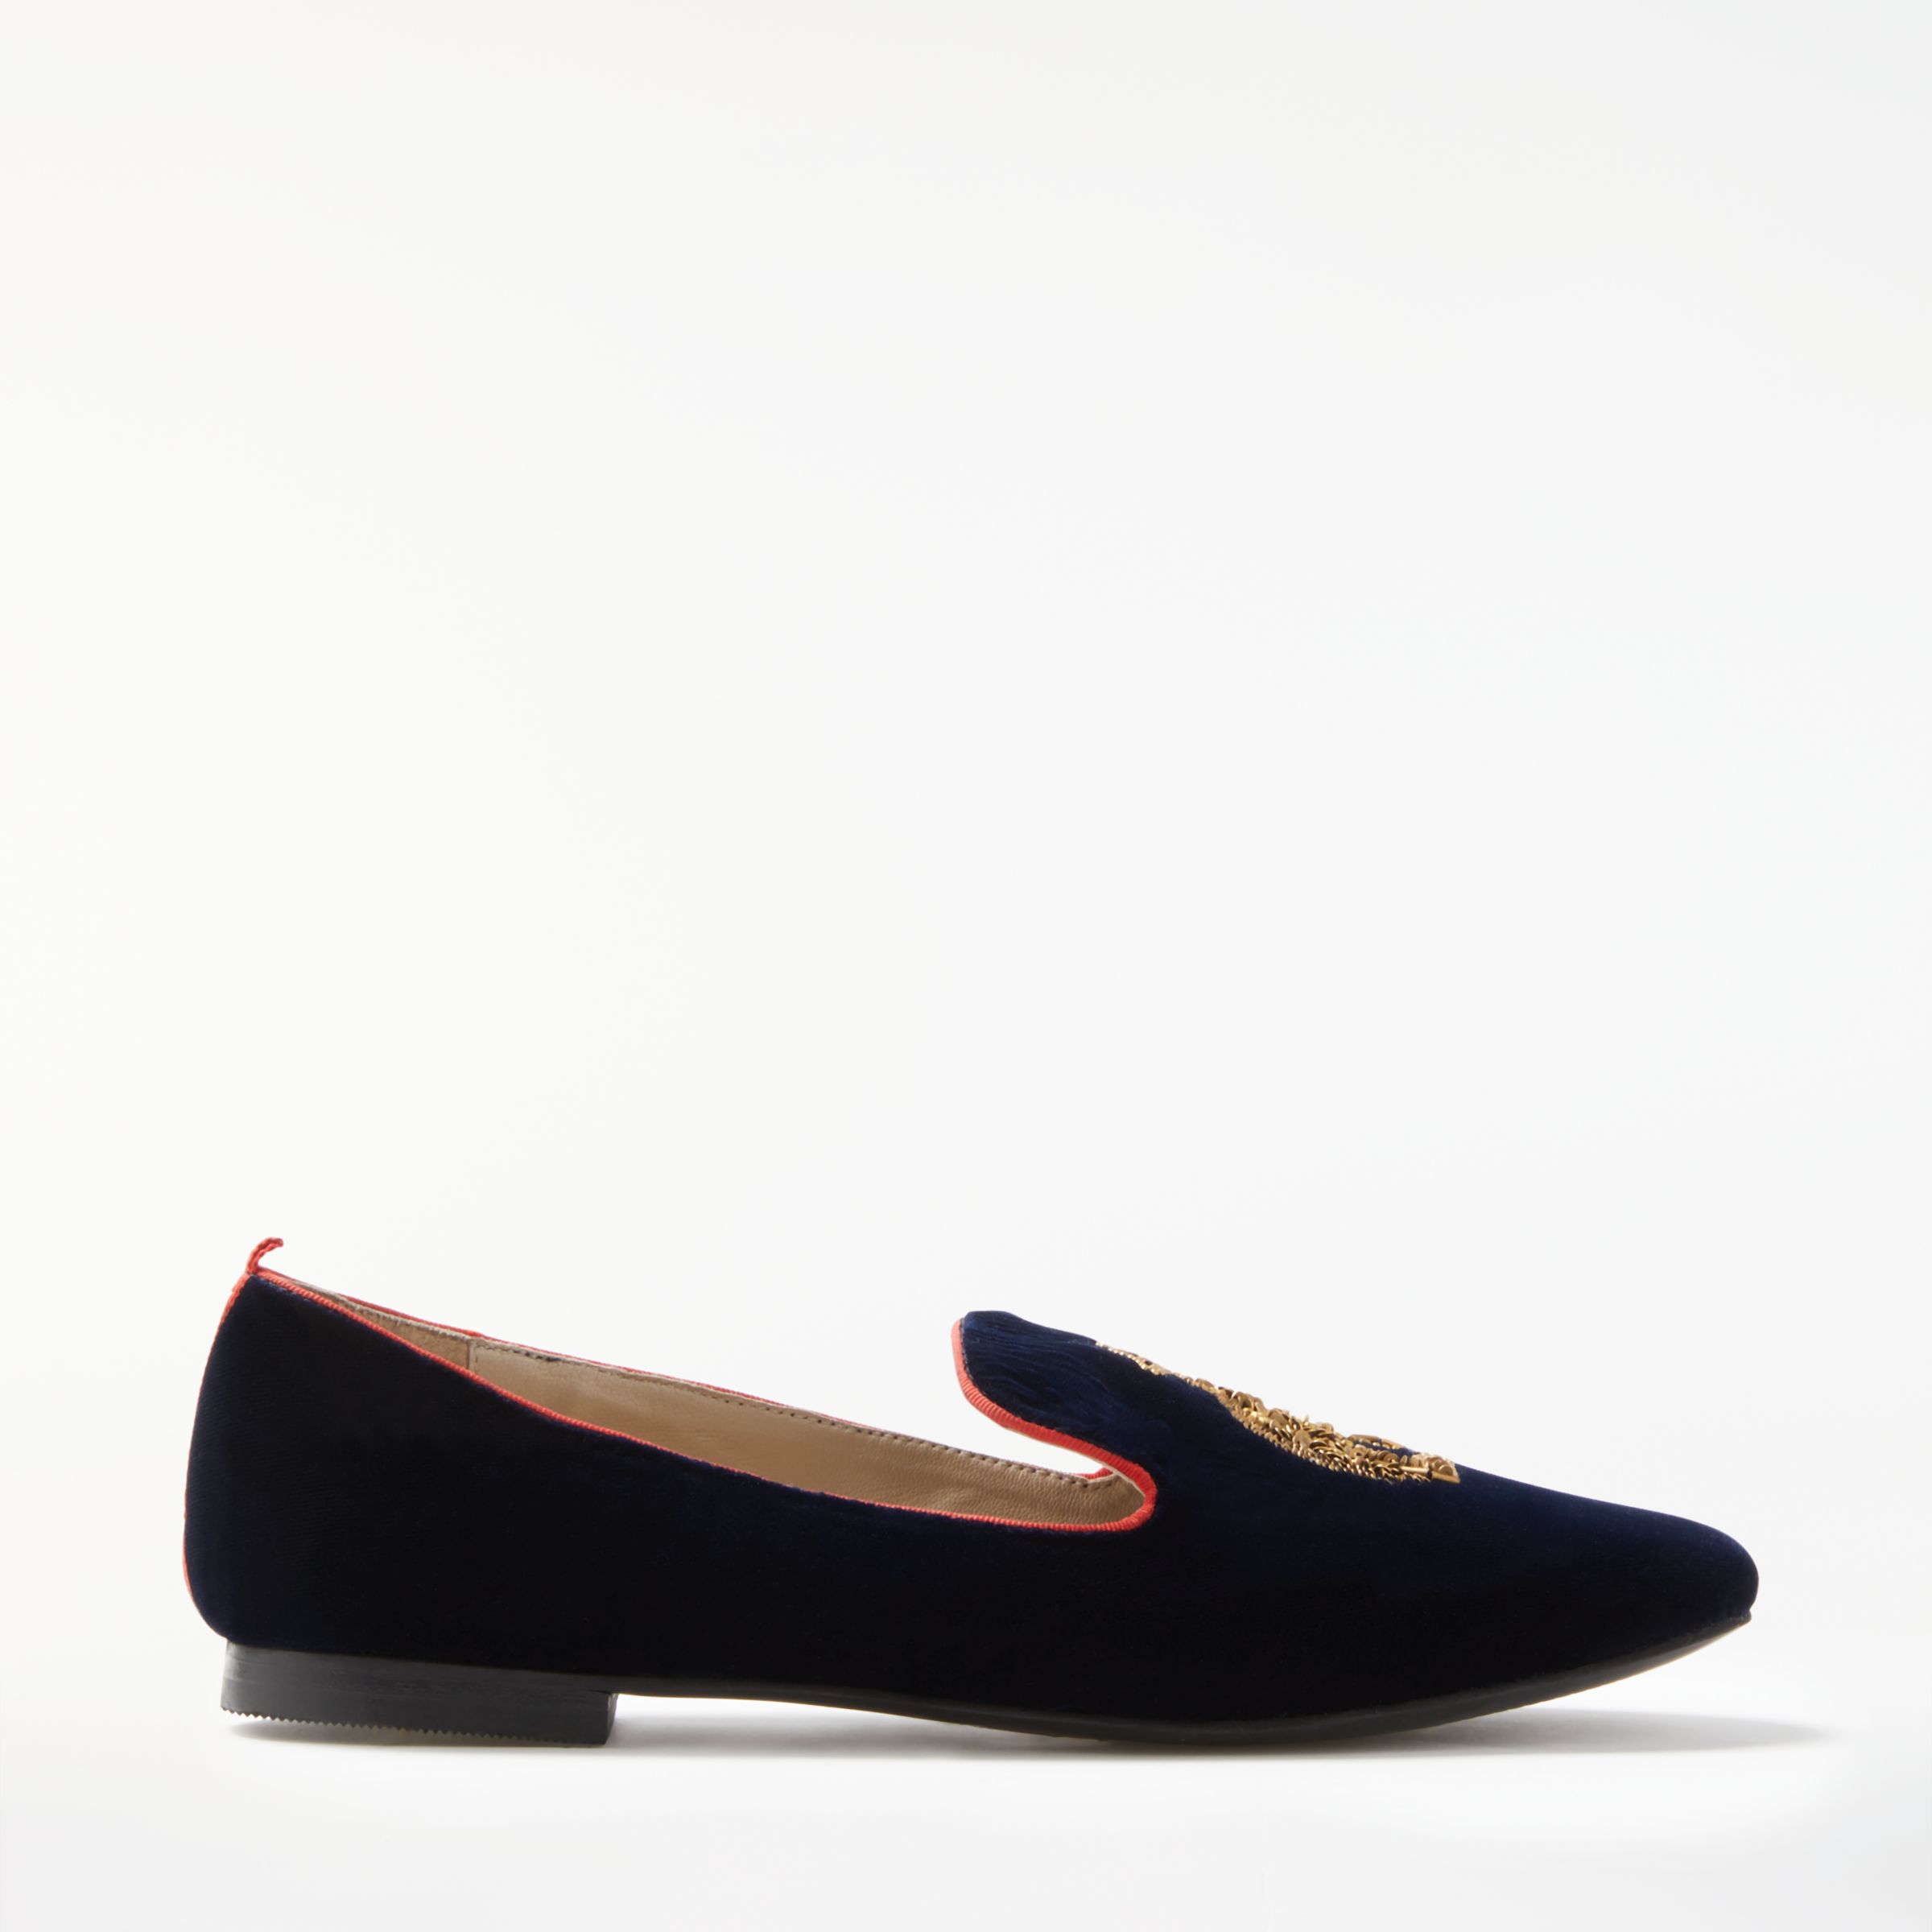 Boden Violetta Embellished Loafers, Navy, 4